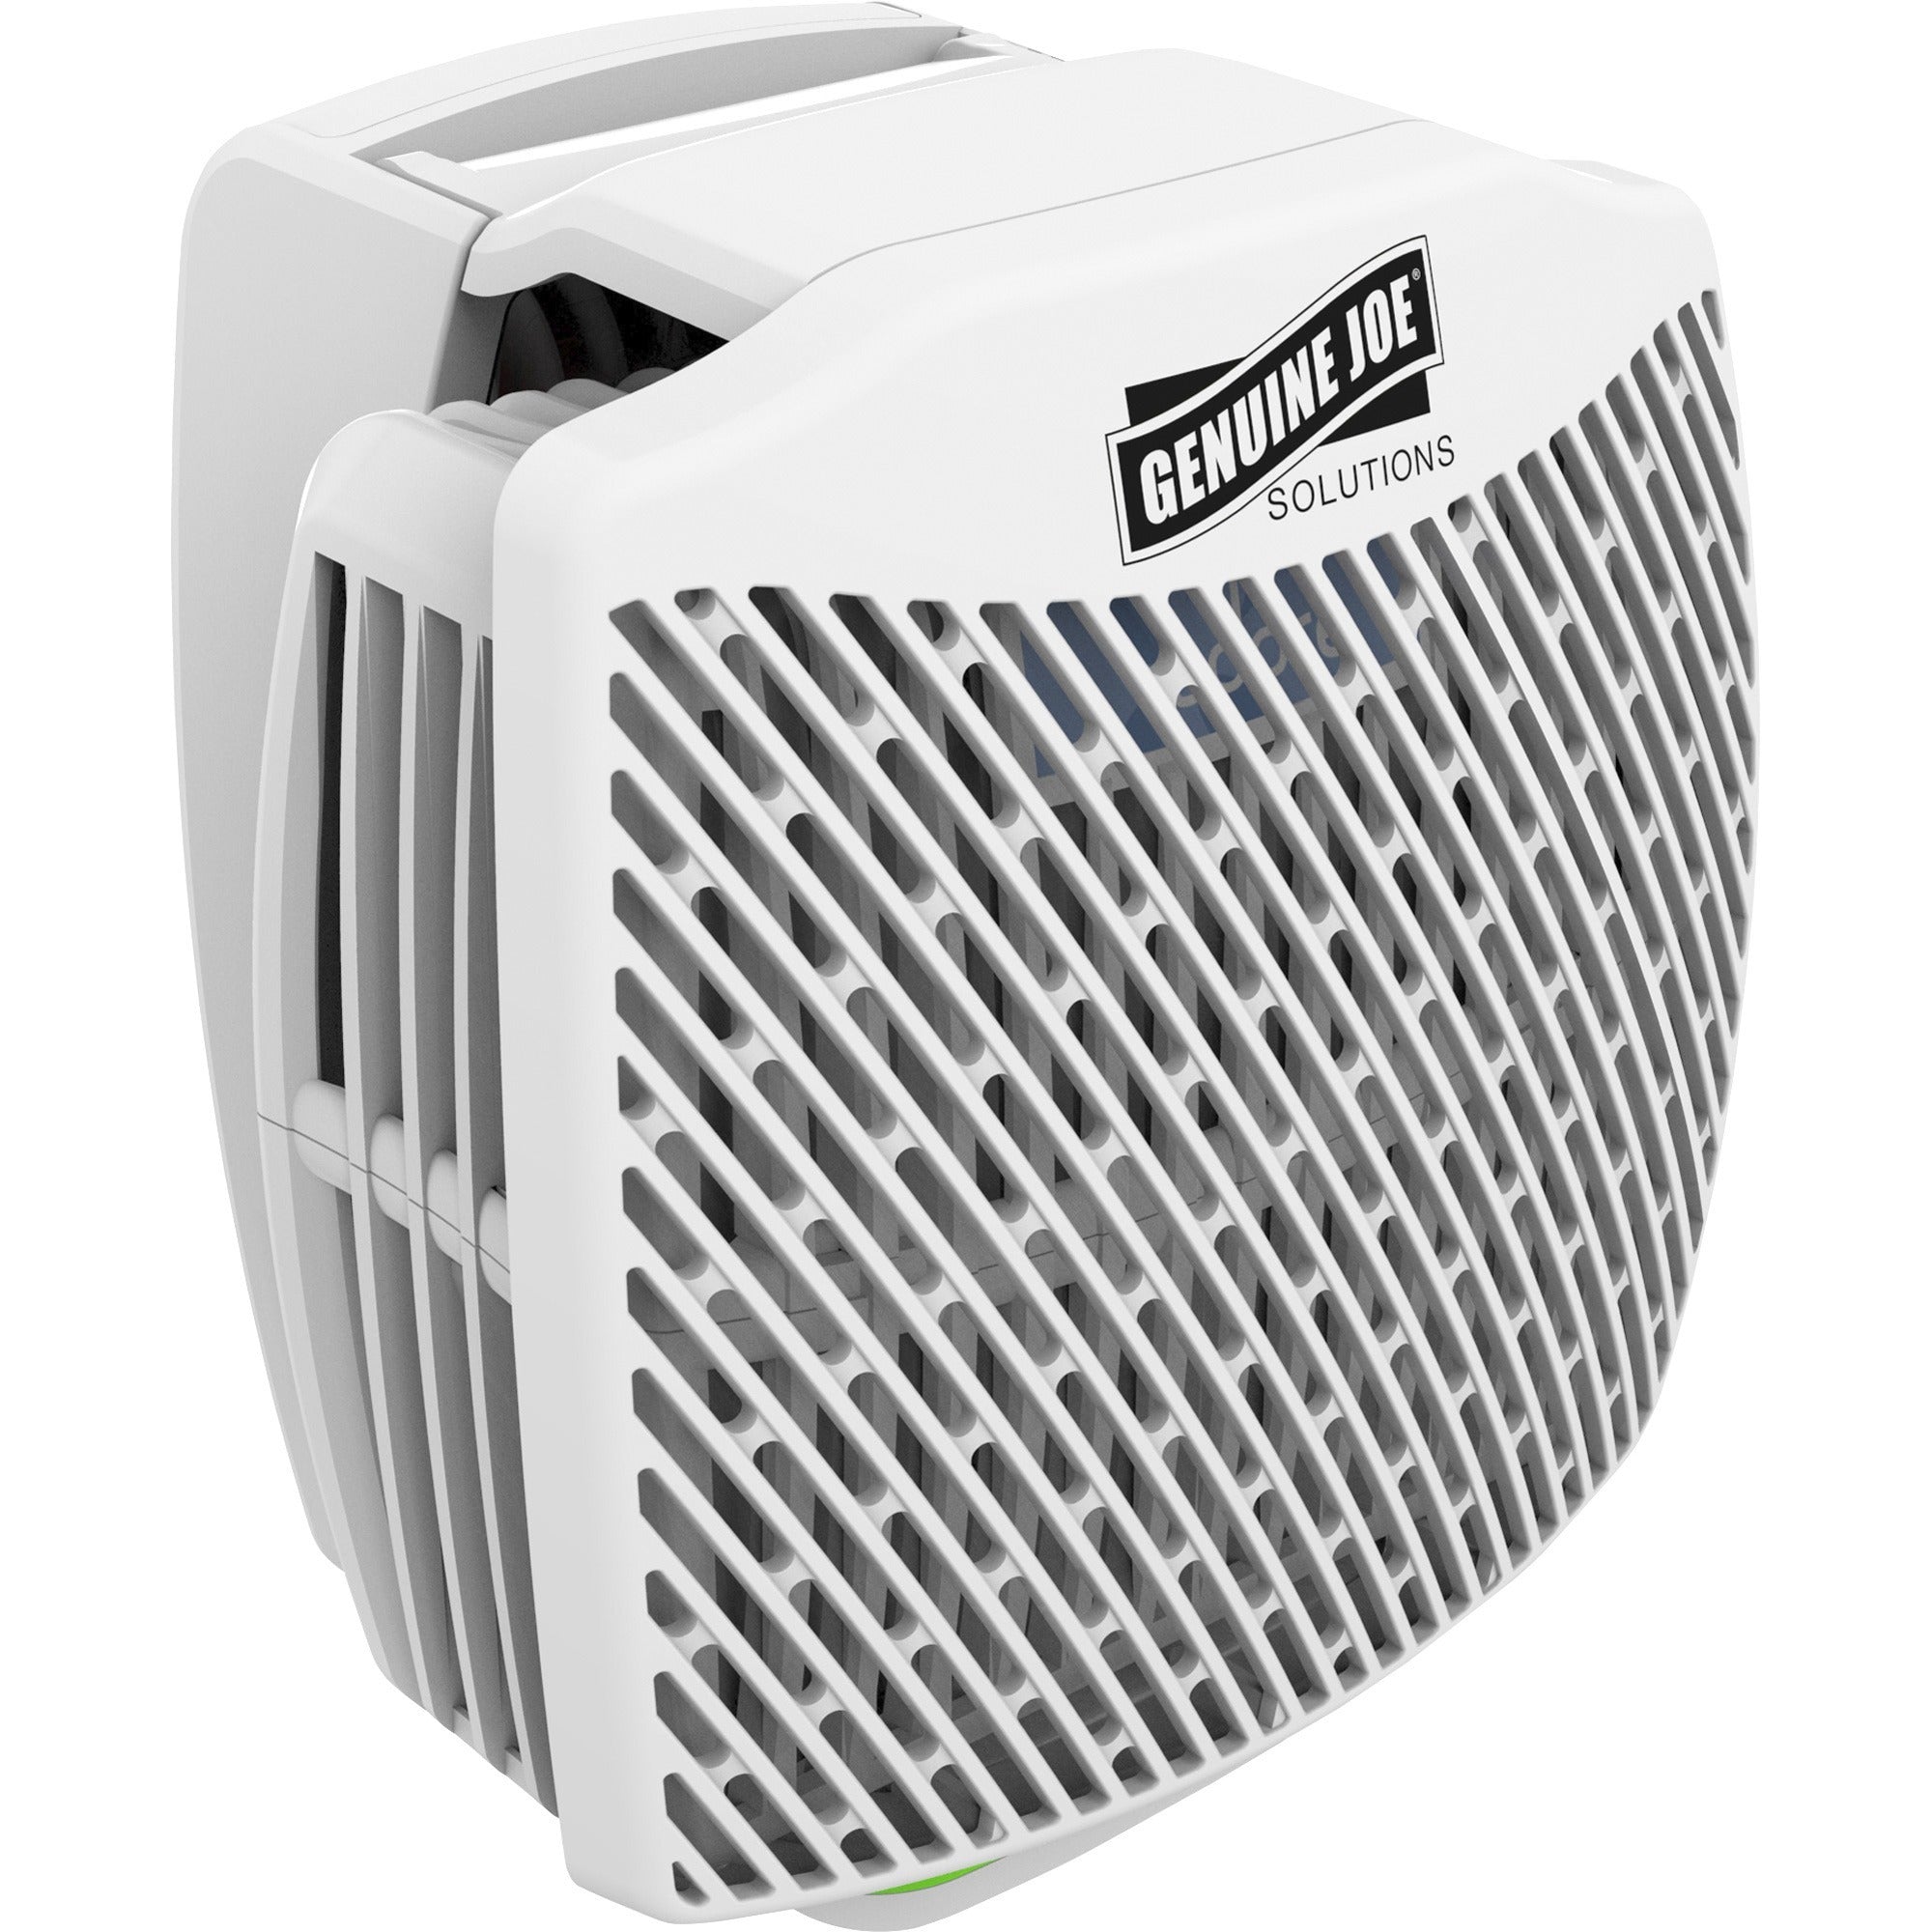 Genuine Joe Air Freshener Dispenser System - 30 Day Refill Life - 6000 ft Coverage - 6 / Carton - White - 4